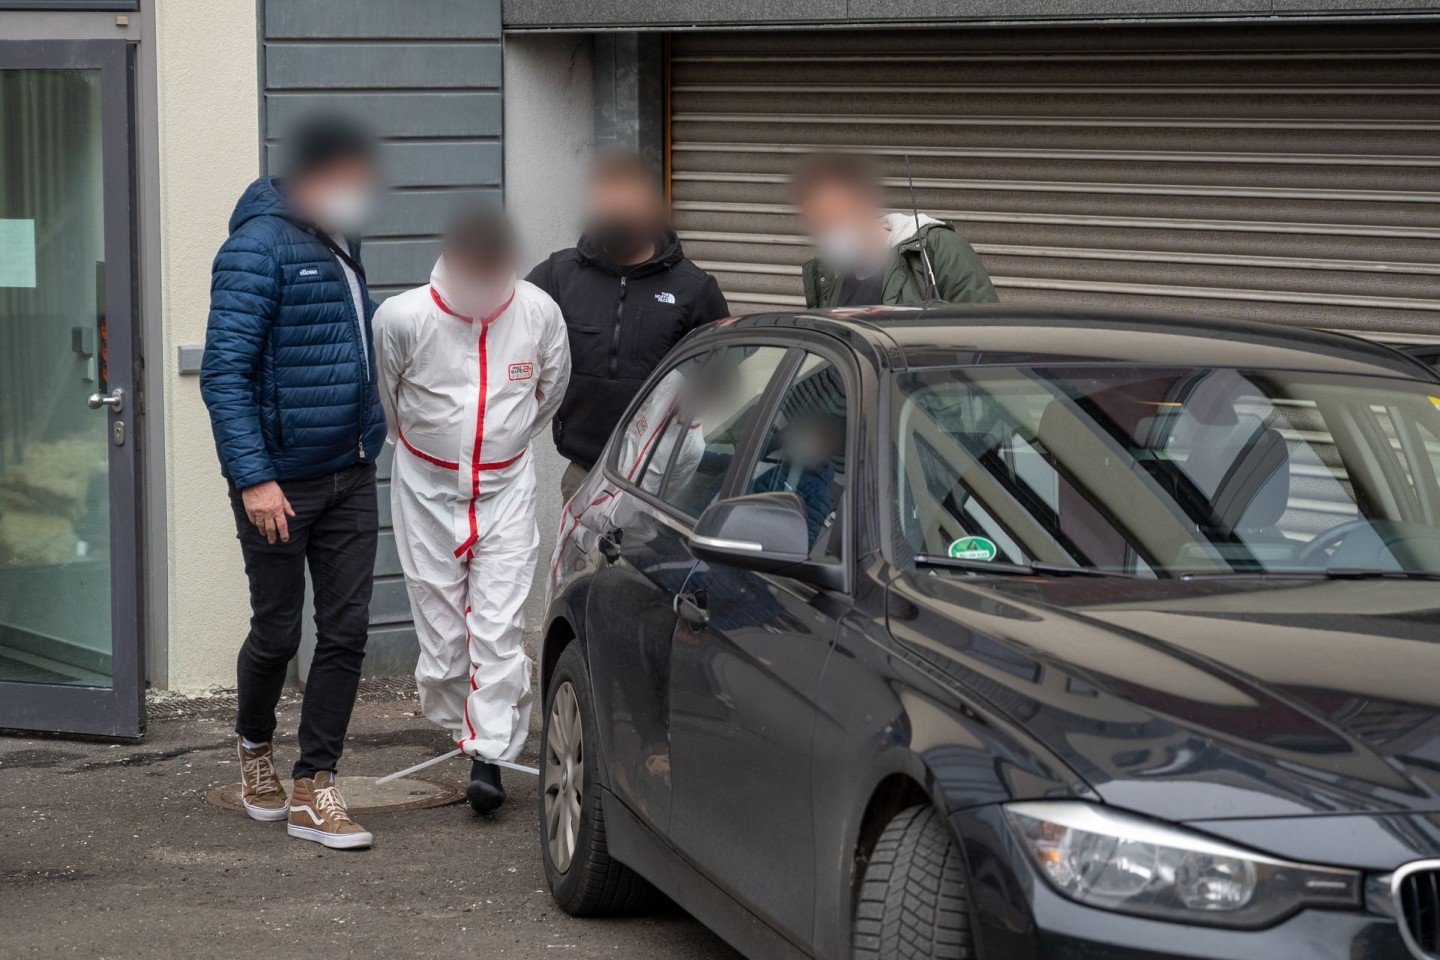 Polizisten bringen einen der Tatverdächtigen (im weißen Overall) nach dem Haftprüfungstermin am Landgericht Kaiserslautern aus dem Justizgebäude.